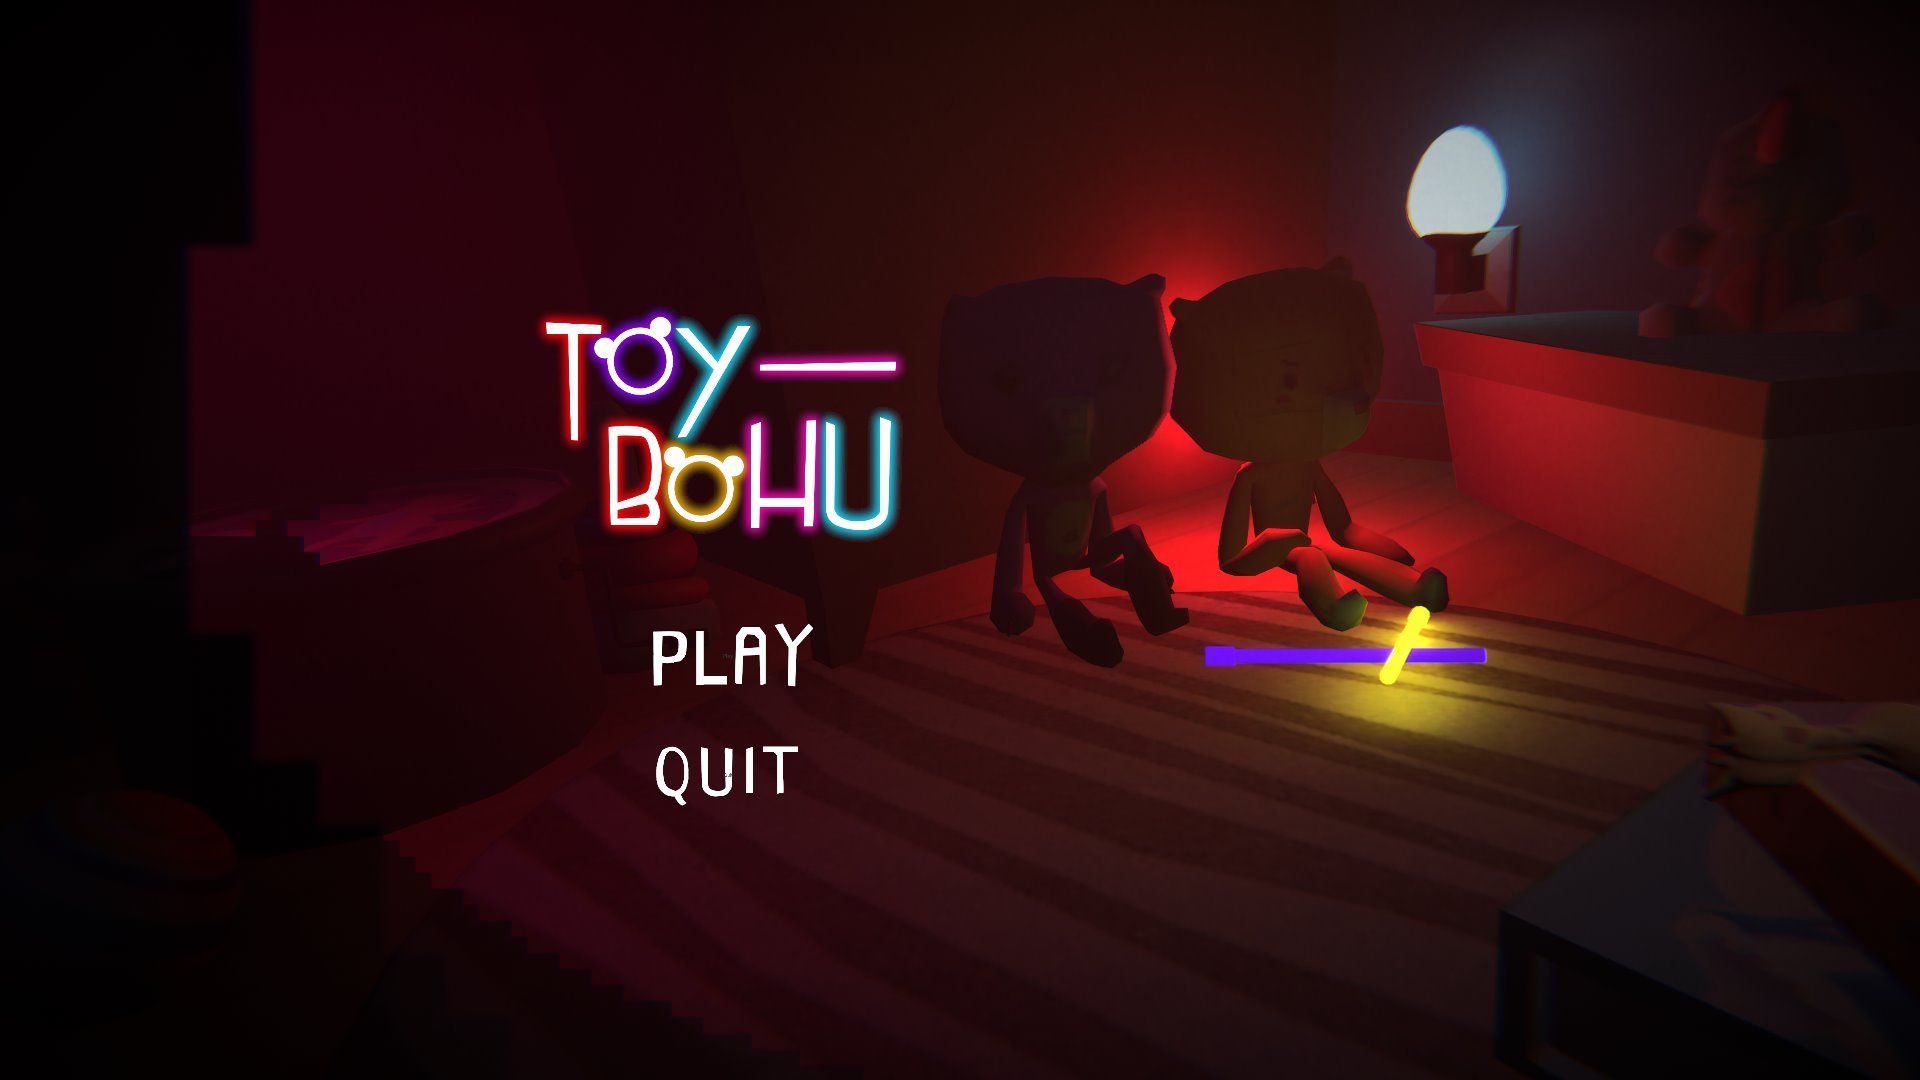 Création d'habillage sonore du jeu interactif Toy Bohu